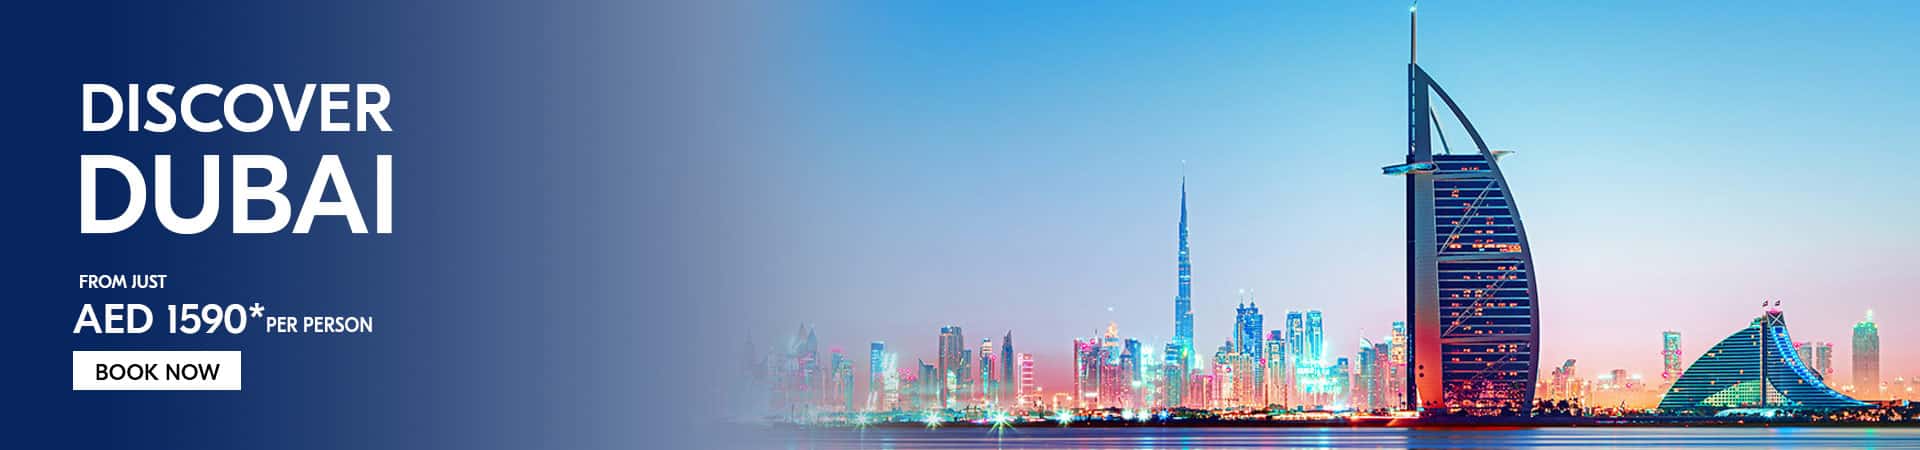 Discover the allure of Dubai tourist attractions